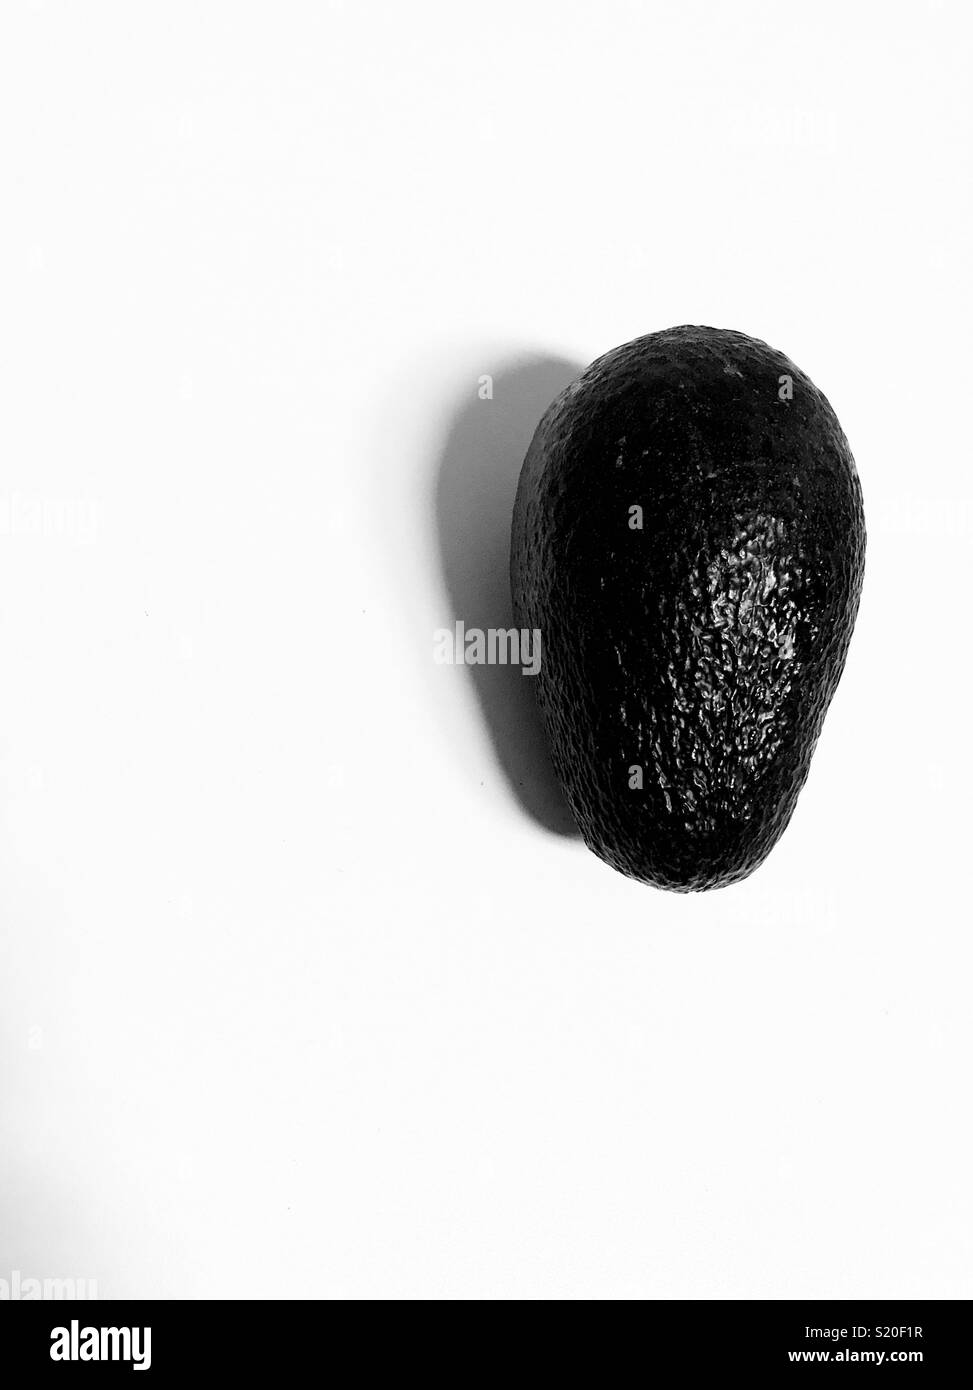 An avocado on a white background. Stock Photo